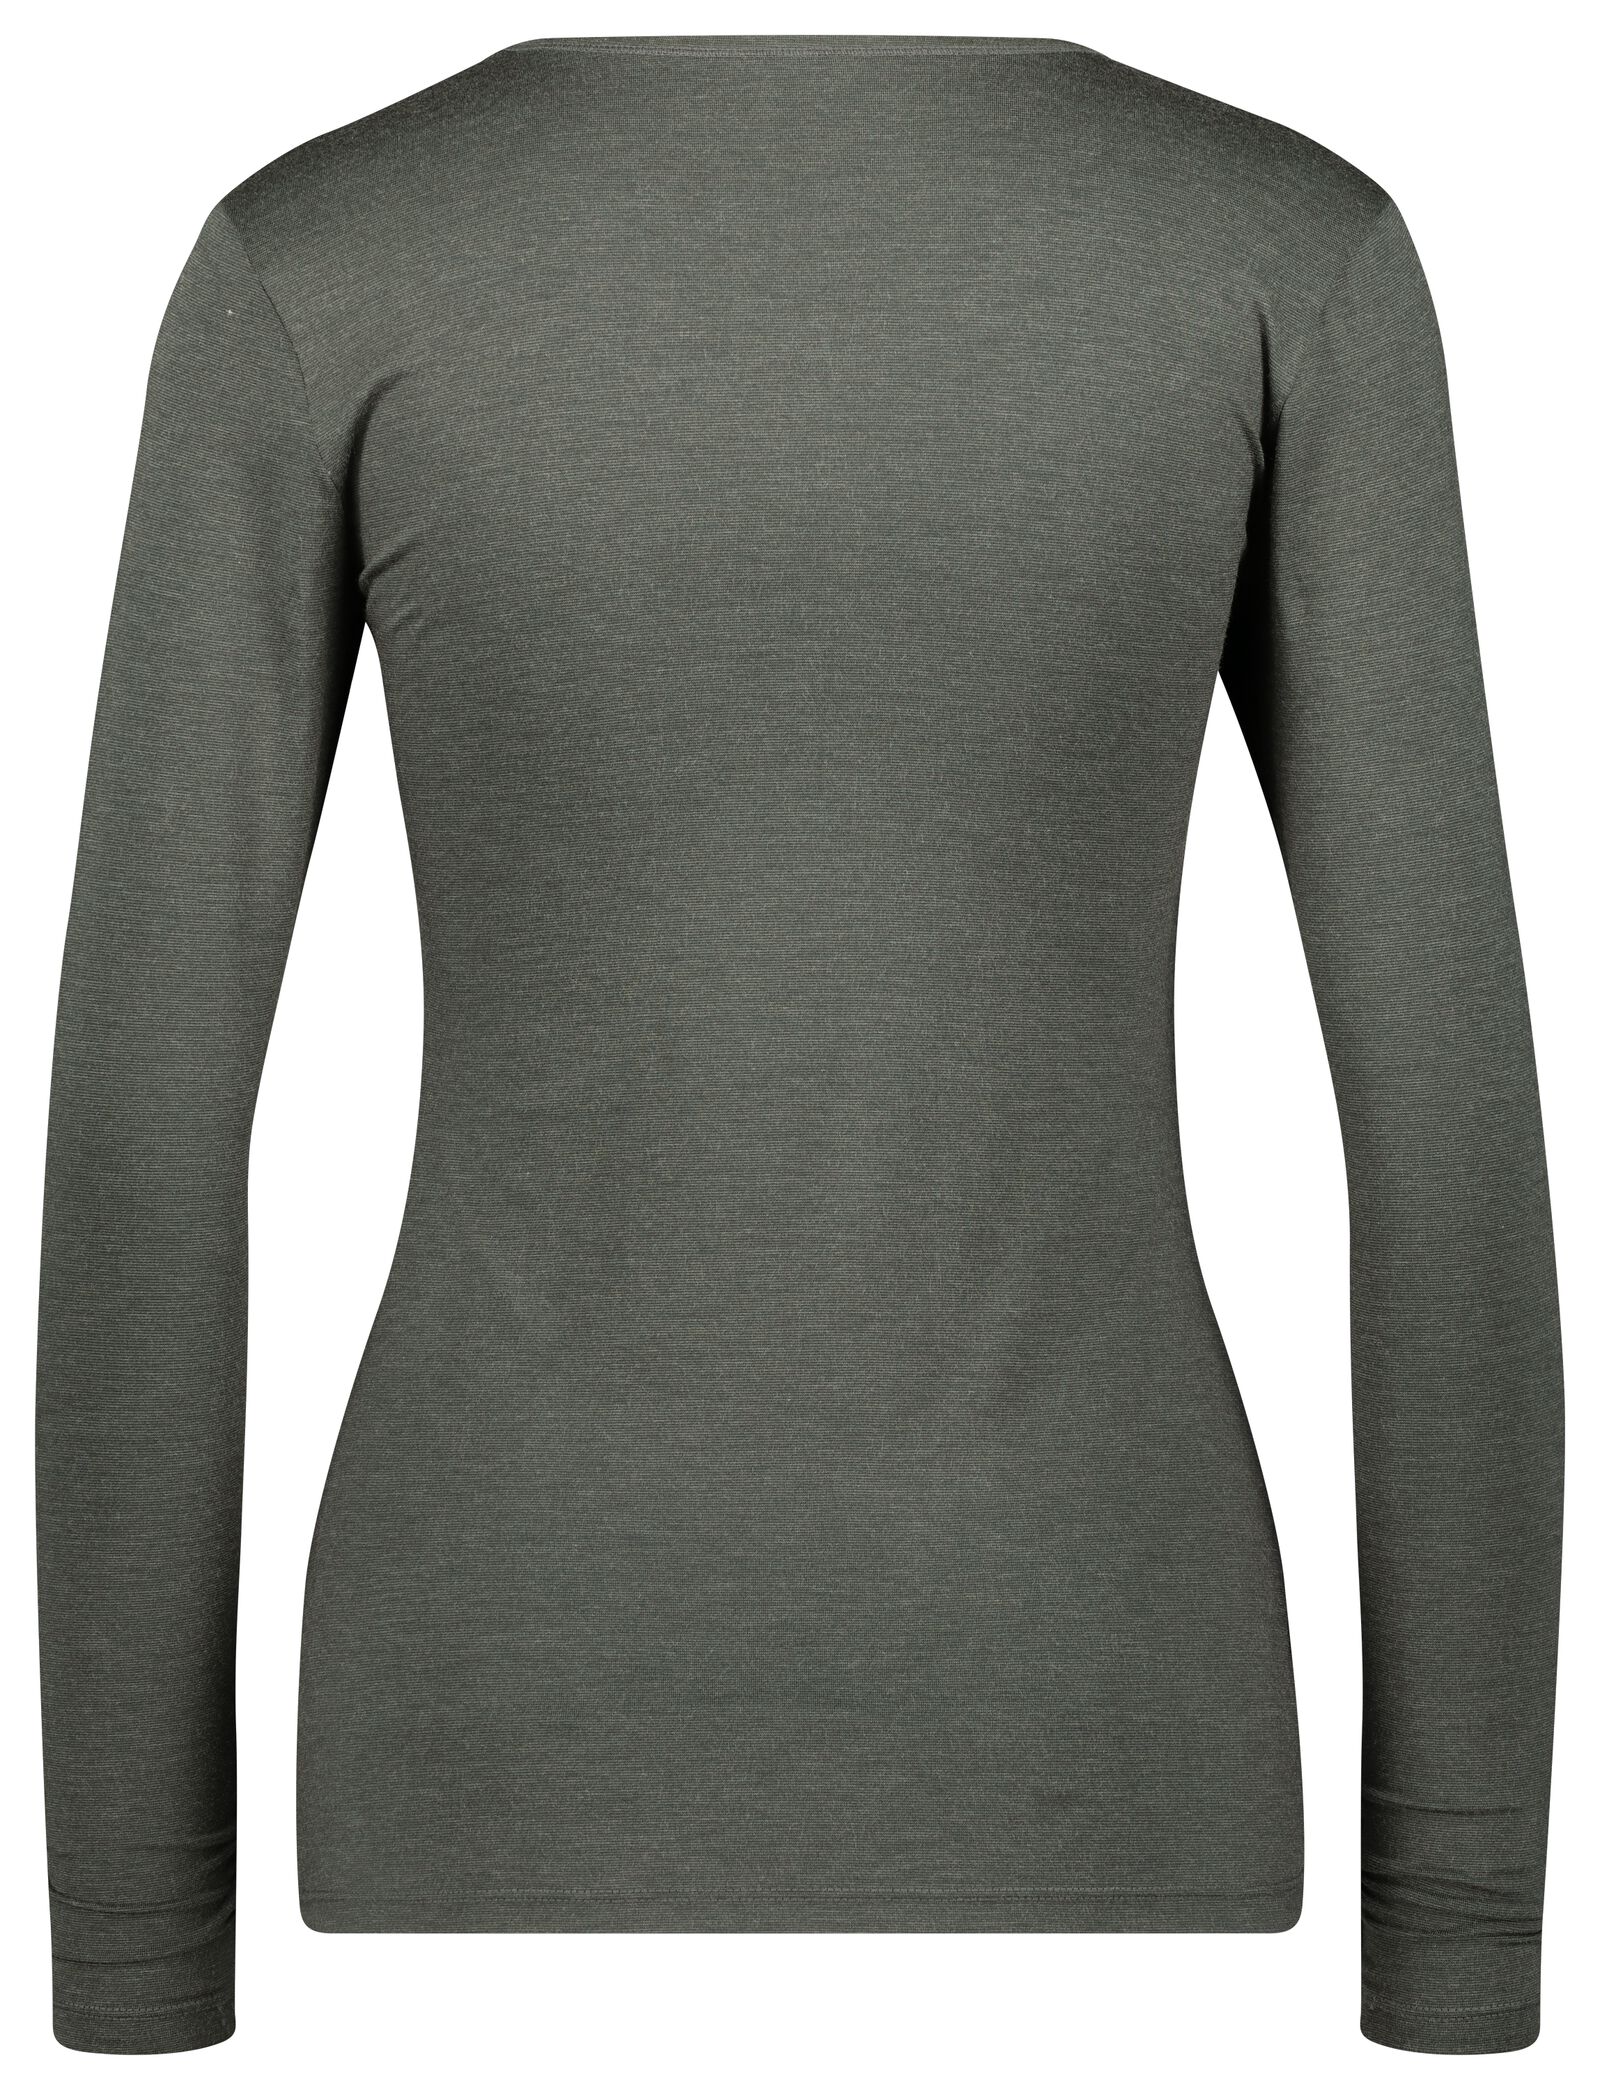 t-shirt thermique femme gris chiné gris chiné - 1000022109 - HEMA